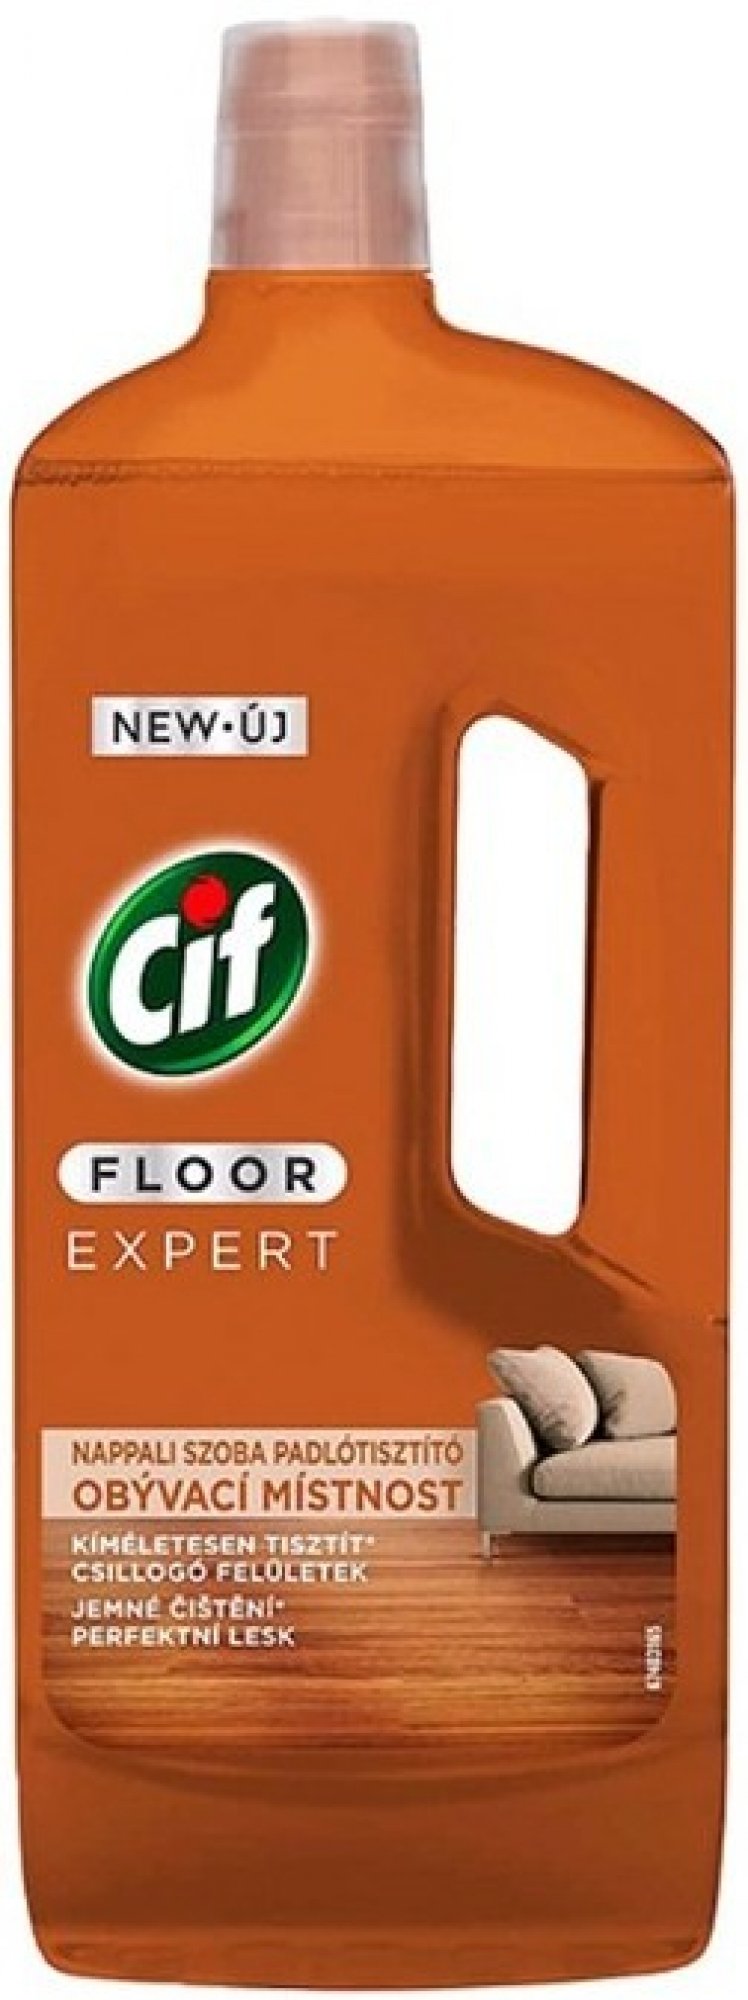 Cif Floor Expert Obývací místnost přípravek na podlahy 750 ml